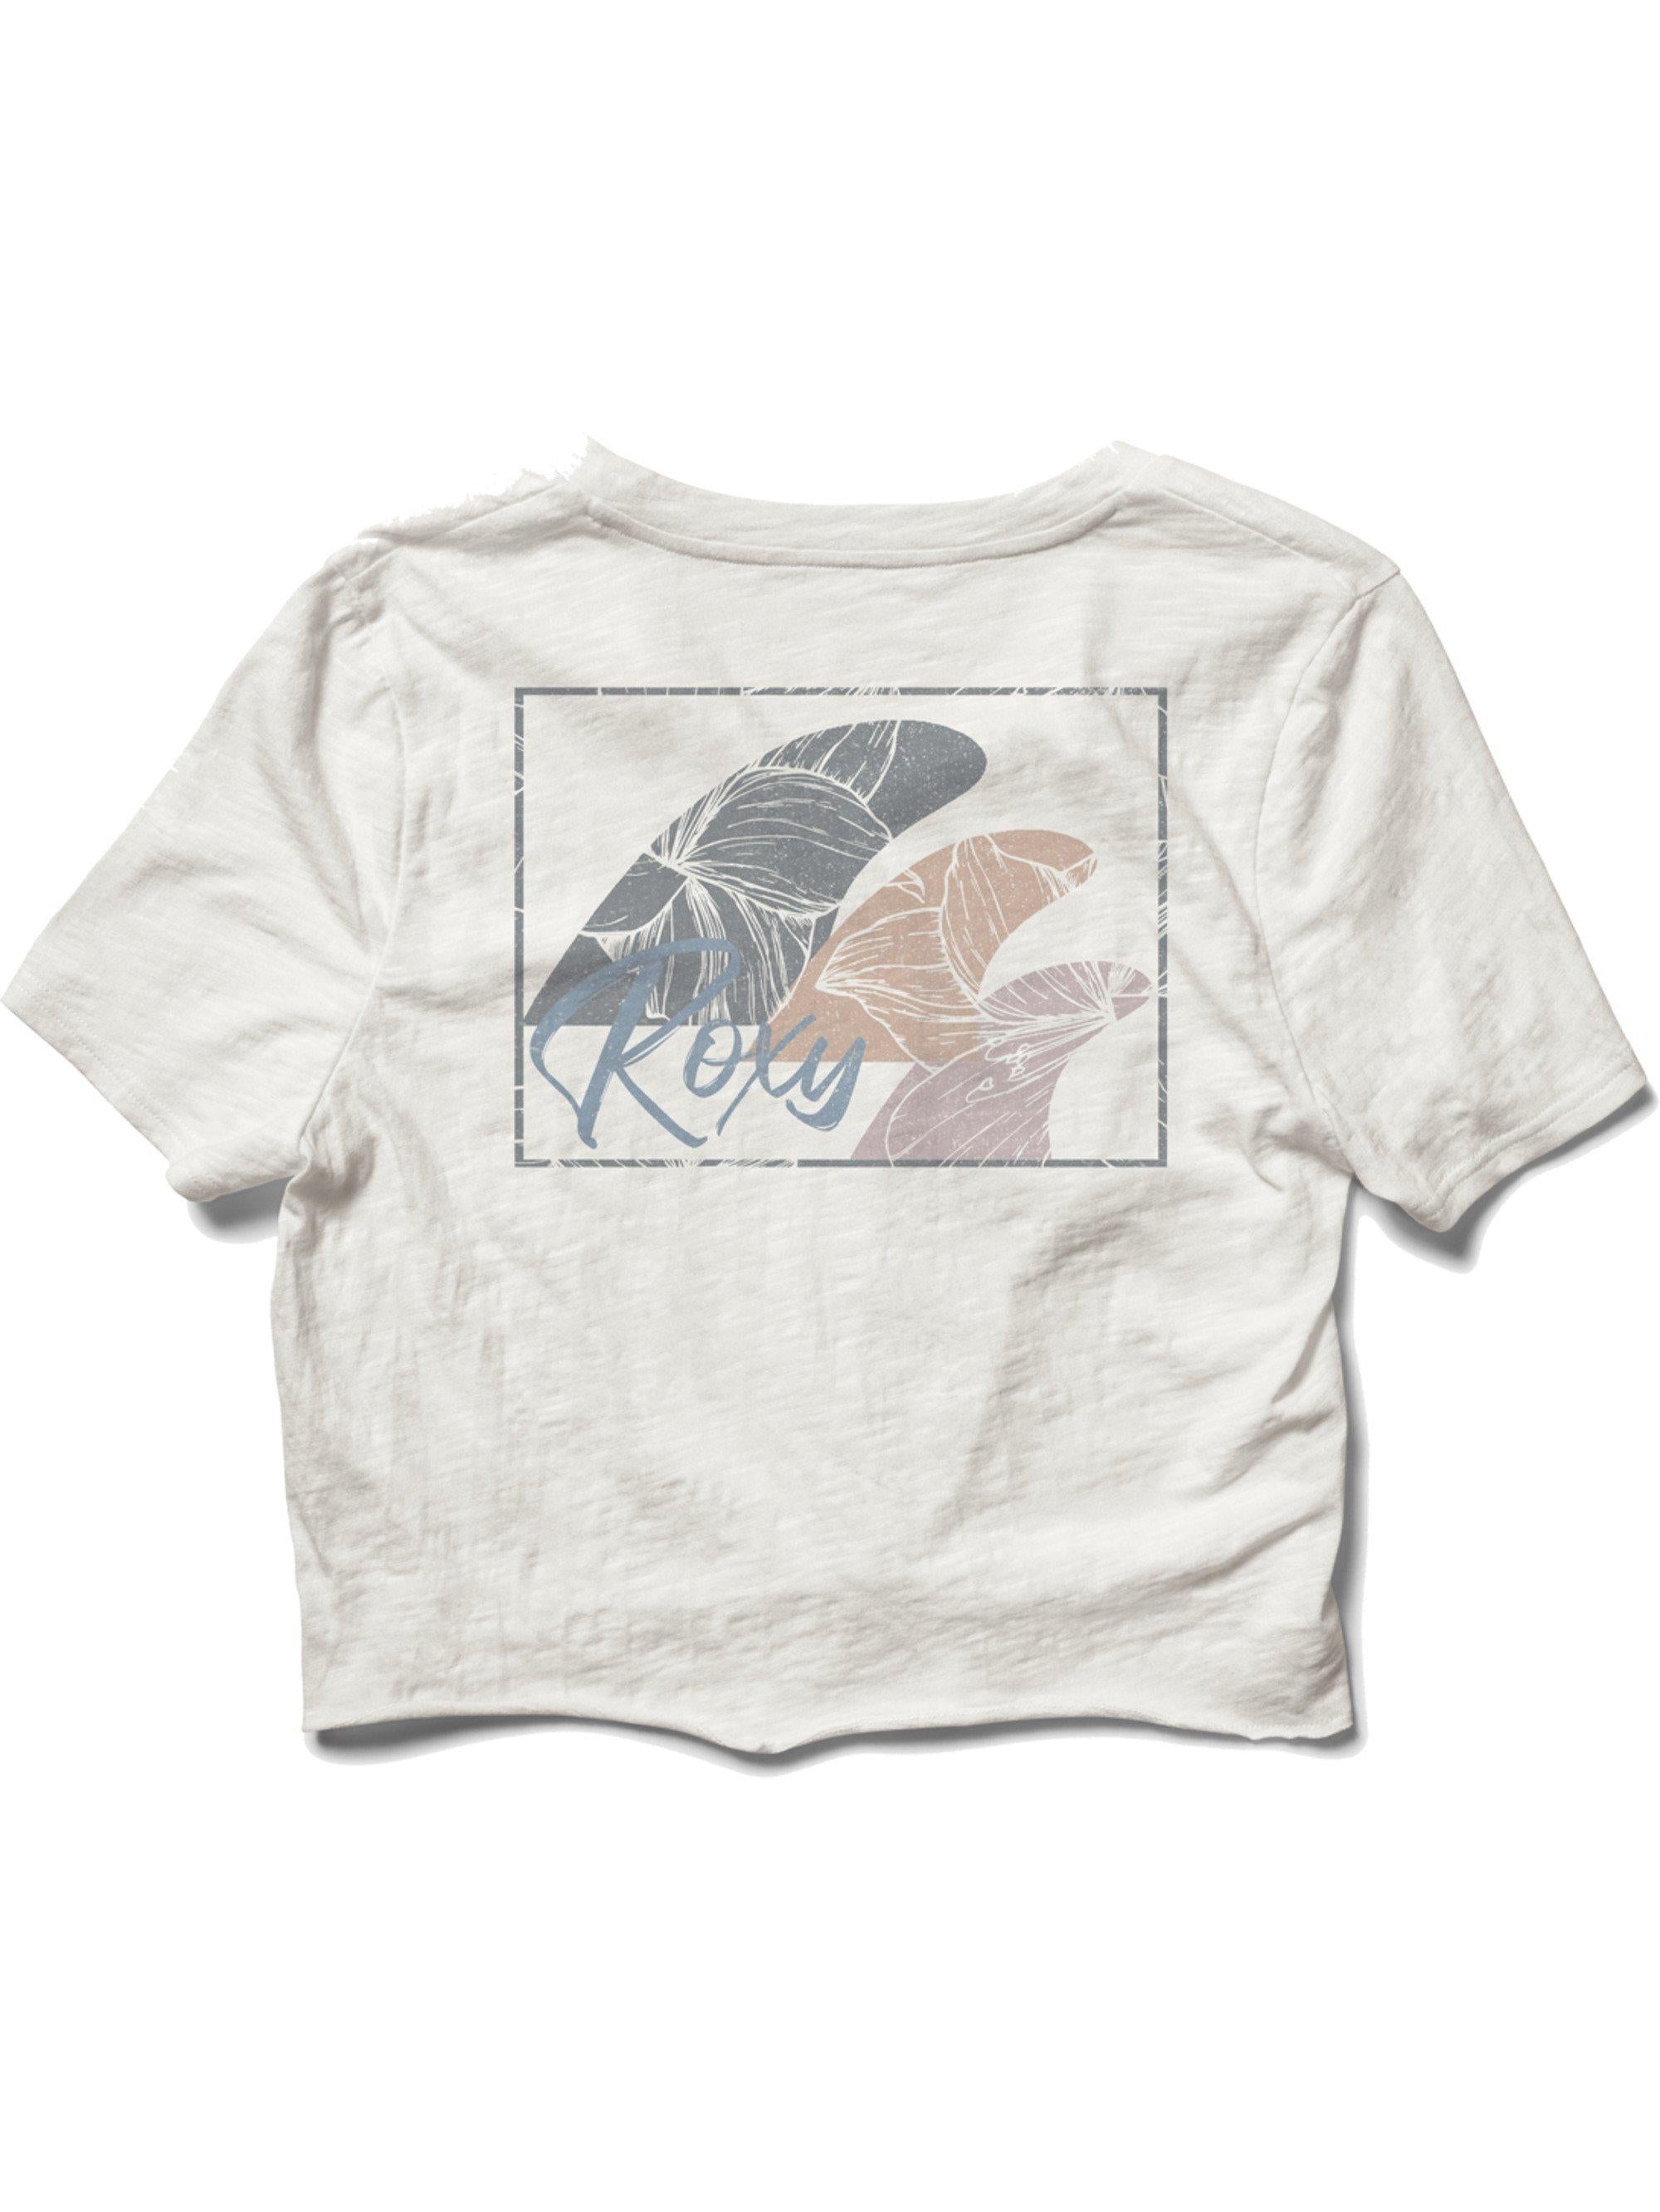 Roxy Tres Fins Women's Front-Tie T-Shirt - 88 Gear